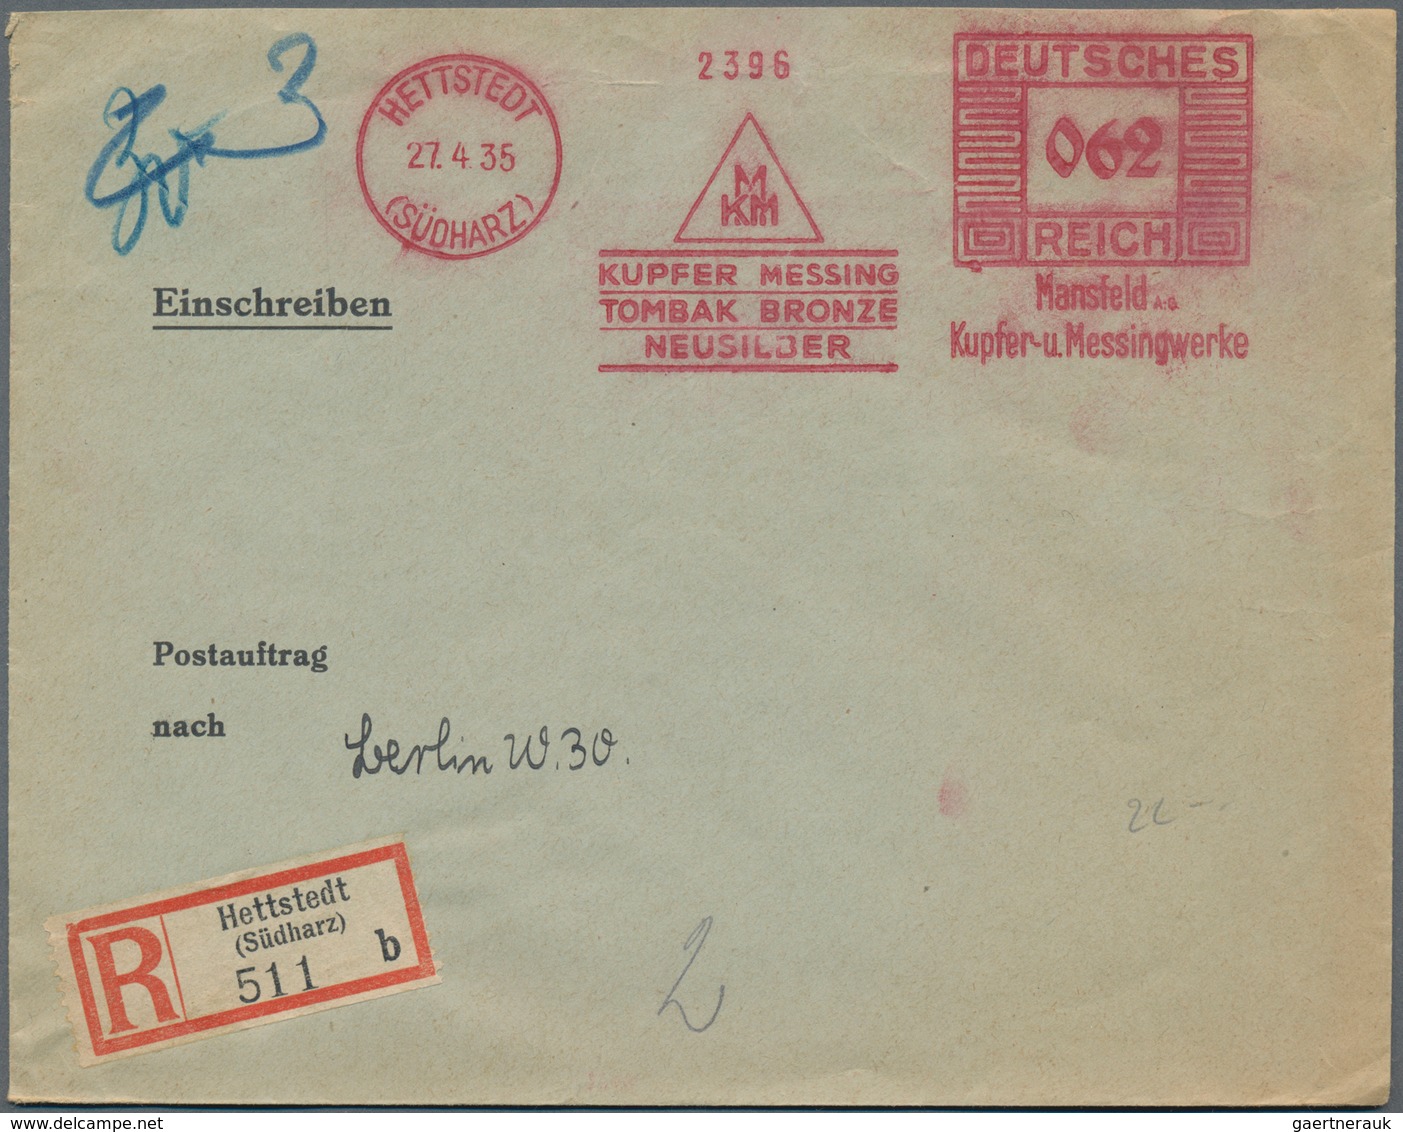 Deutsches Reich - 3. Reich: 1933/1941, ca. 750-800 Belege mit Firmenfreistempeln, dabei Vorderseiten